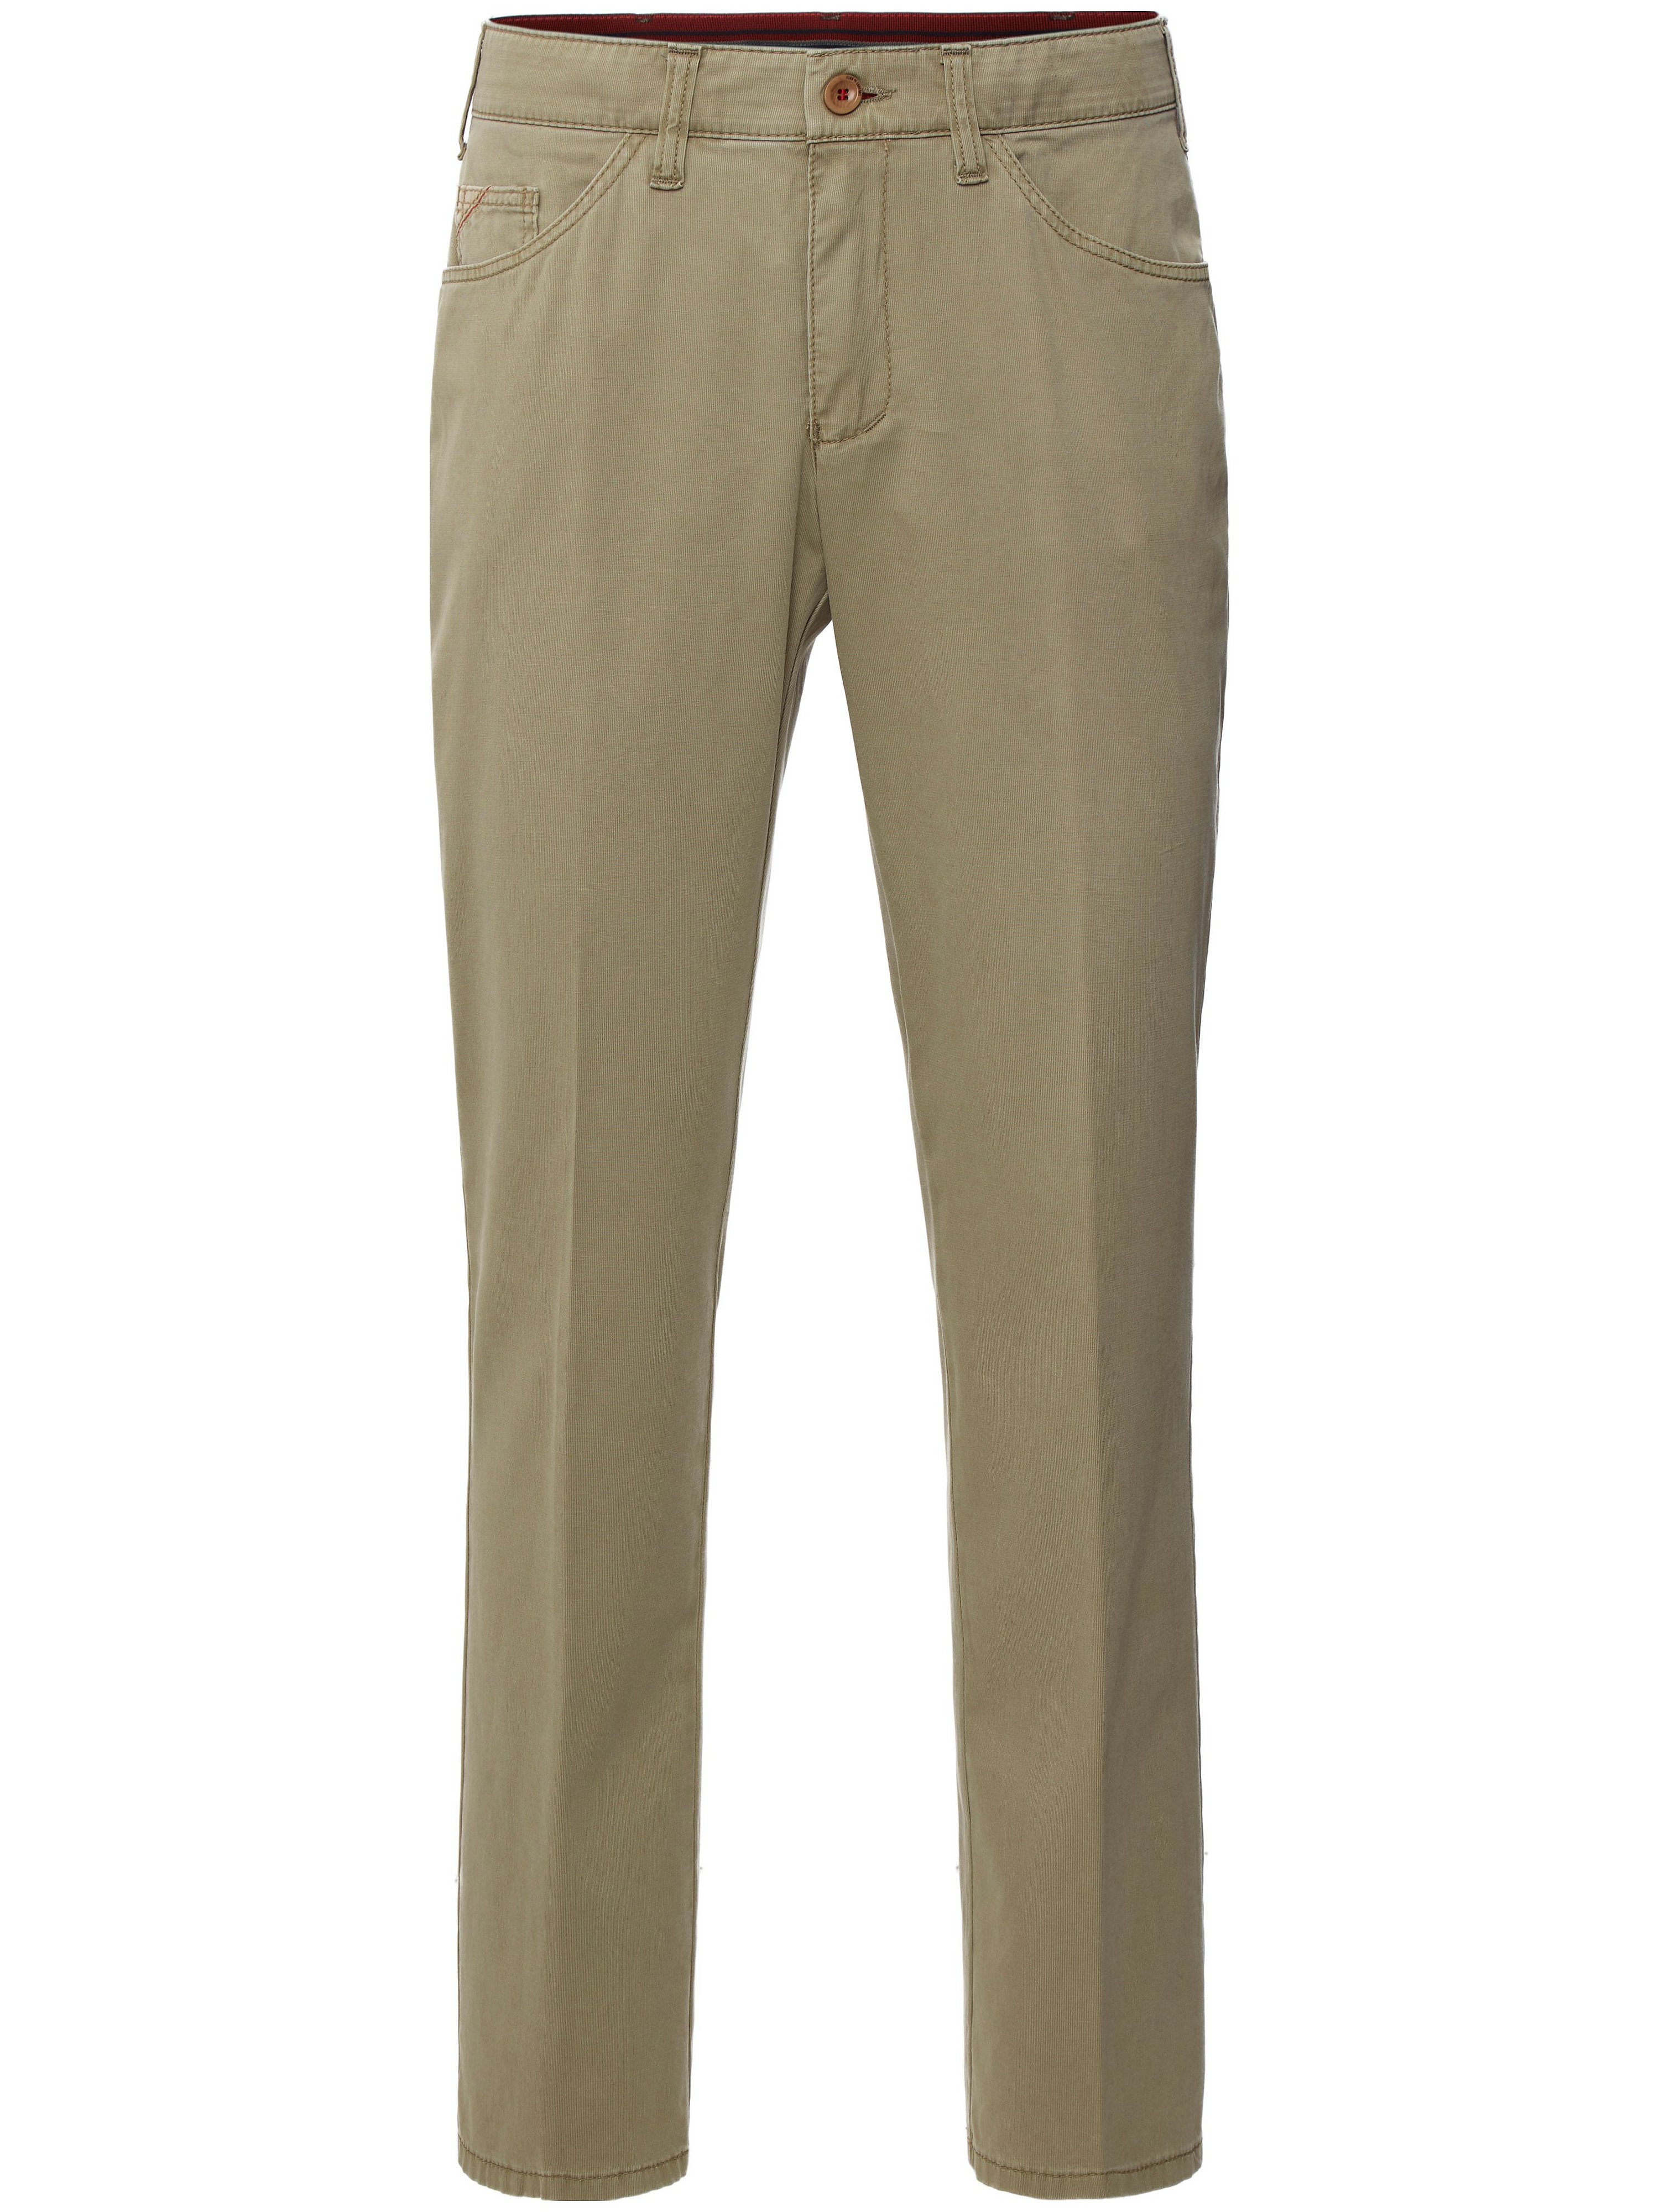 Le pantalon Comfort Fit modèle Keno  CLUB OF COMFORT vert taille 52